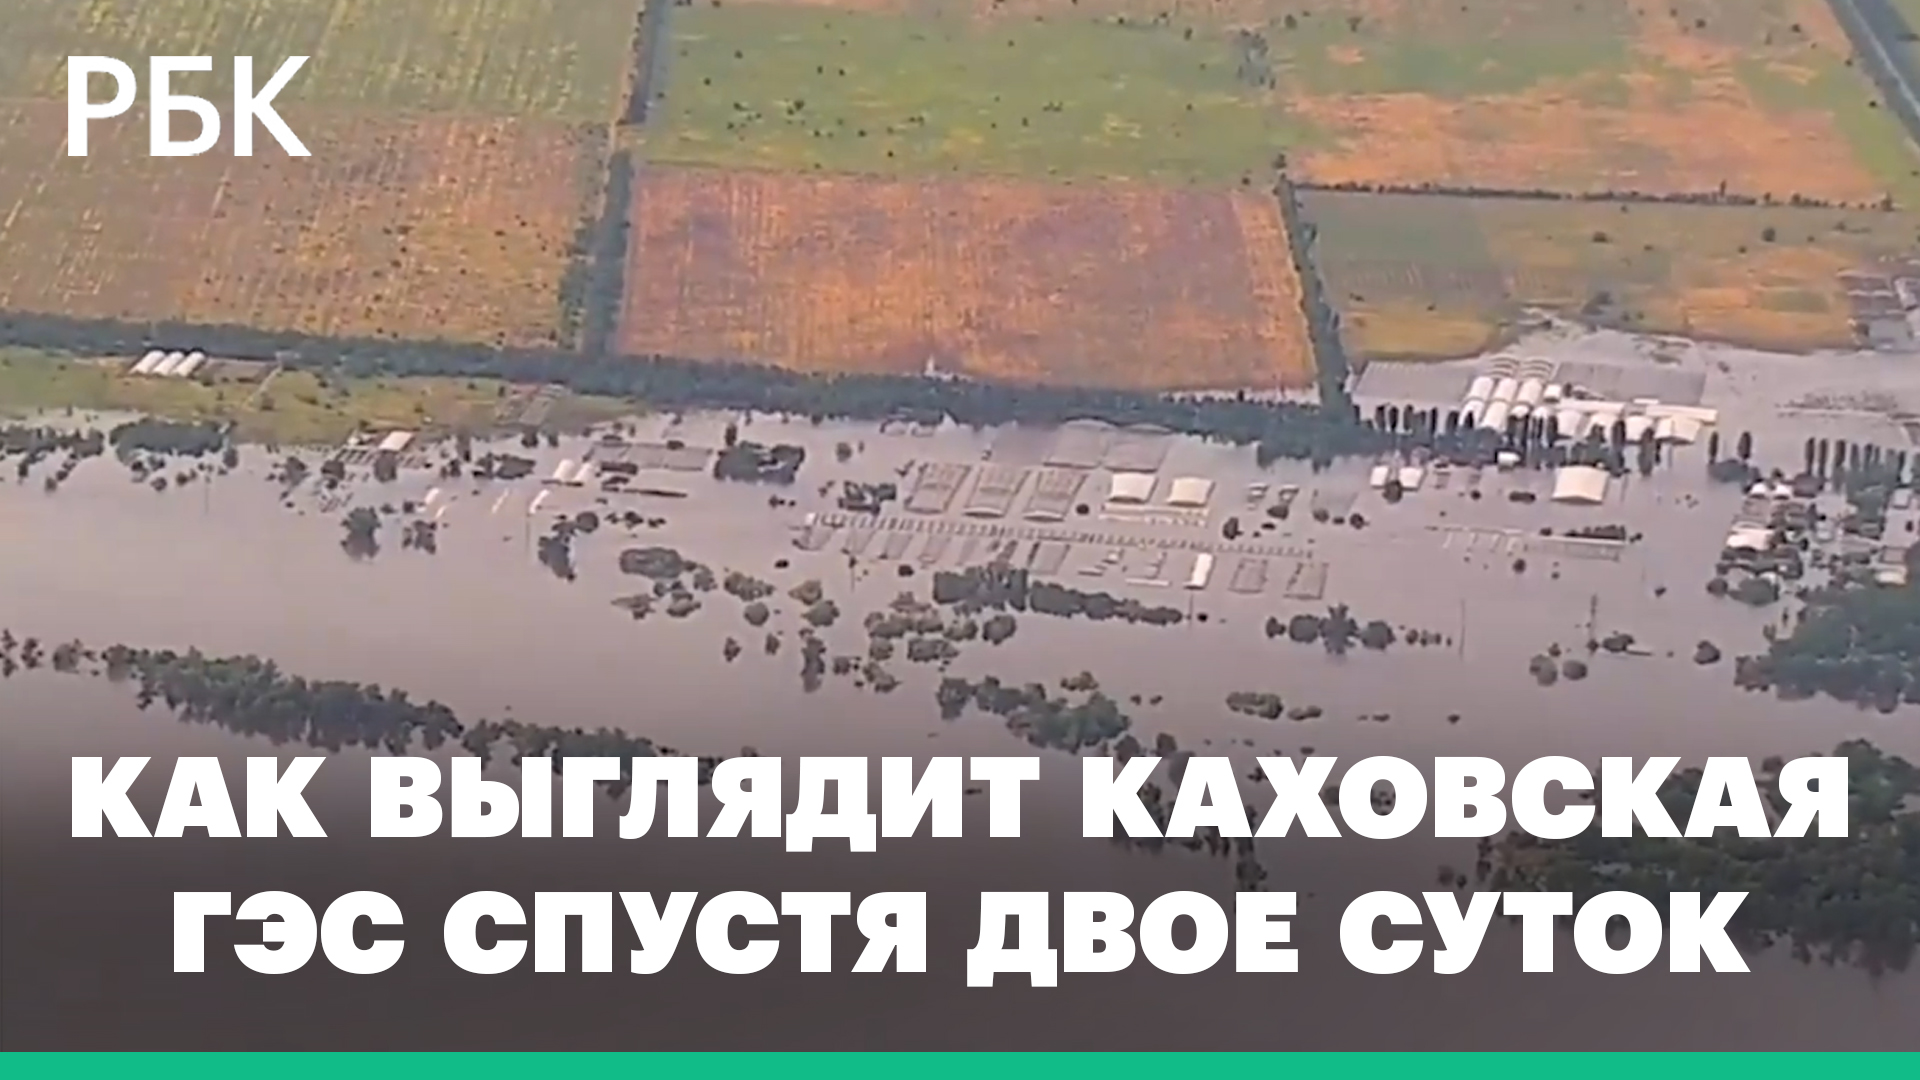 Как выглядит разрушенная Каховская ГЭС спустя двое суток. Видео